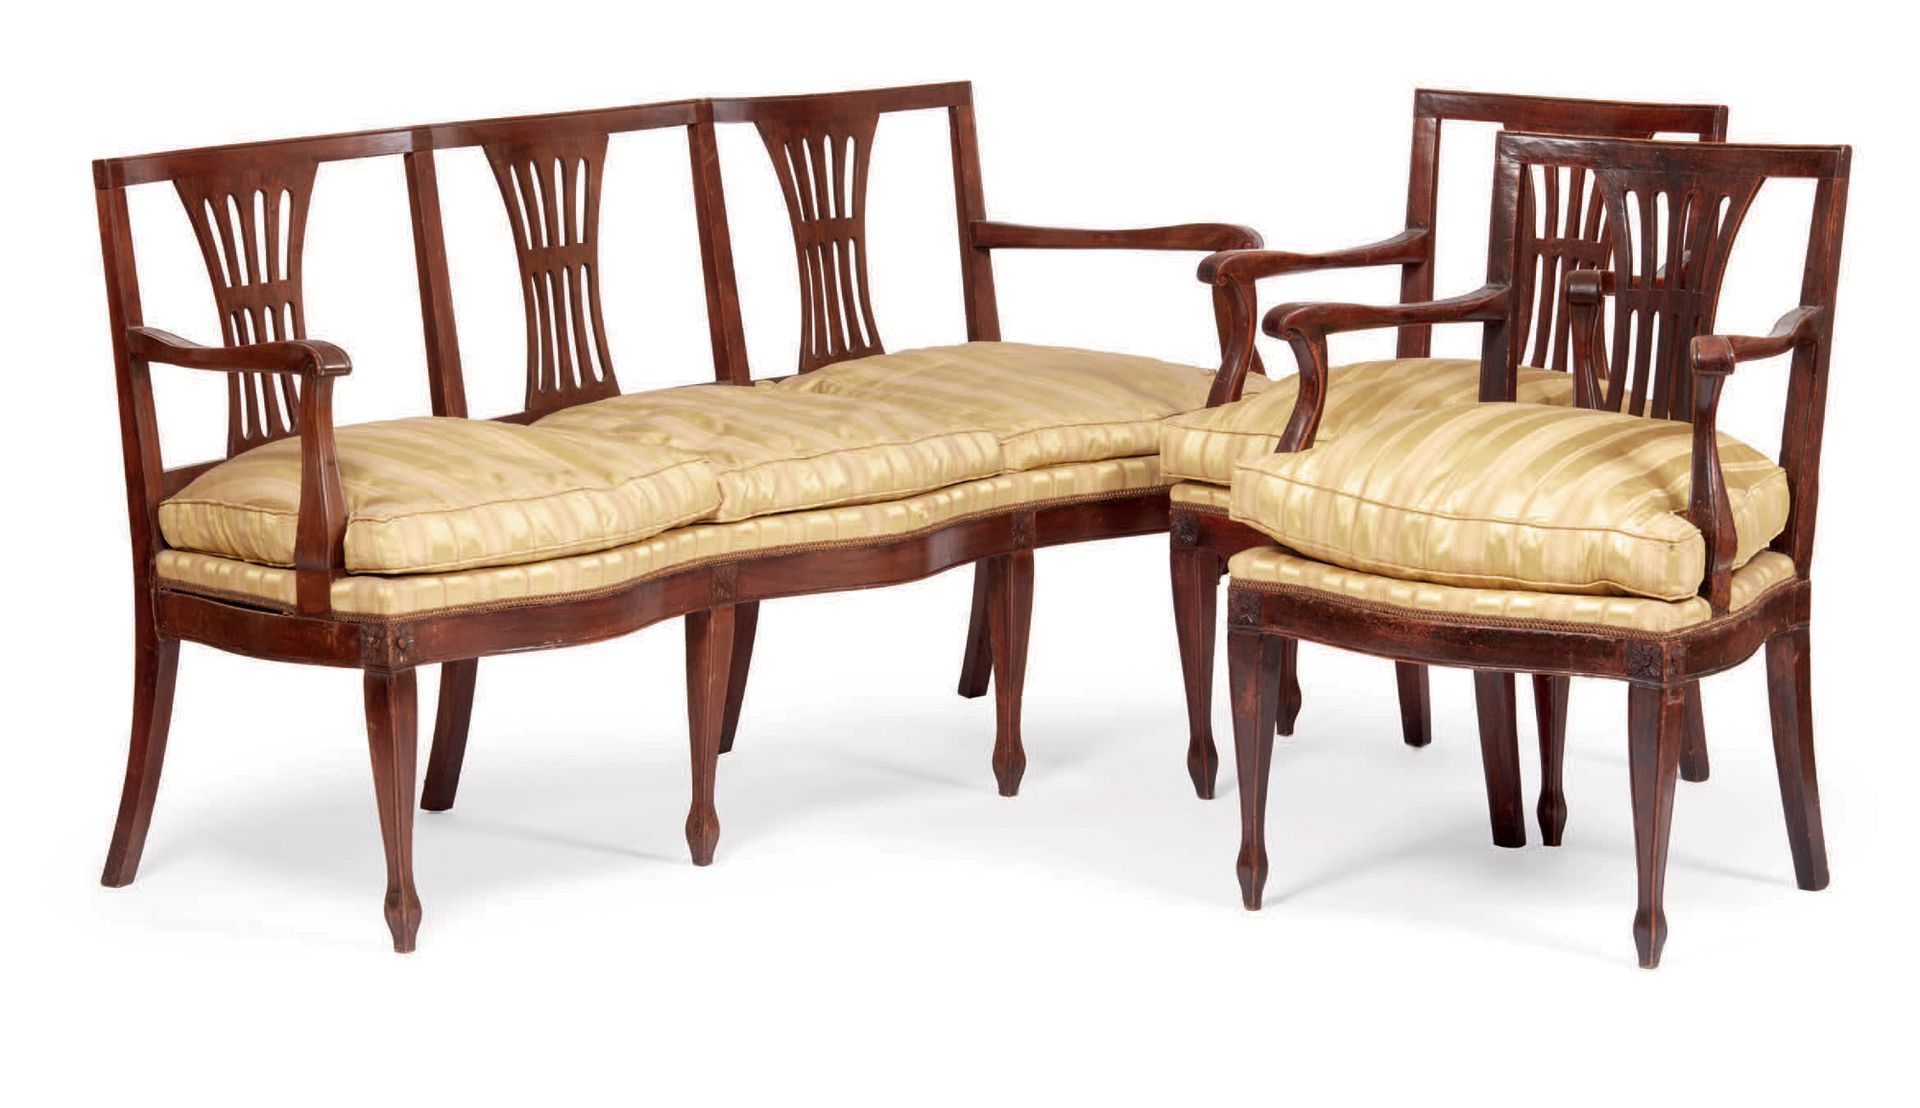 Null 木制休闲家具，敞开式靠背，扶手和腿部略带波浪形，座椅用织物和丝绸坐垫装饰，有浅黄色的条纹图案，由一个三座沙发和两个扶手椅组成，19世纪（缺陷）
Mob&hellip;